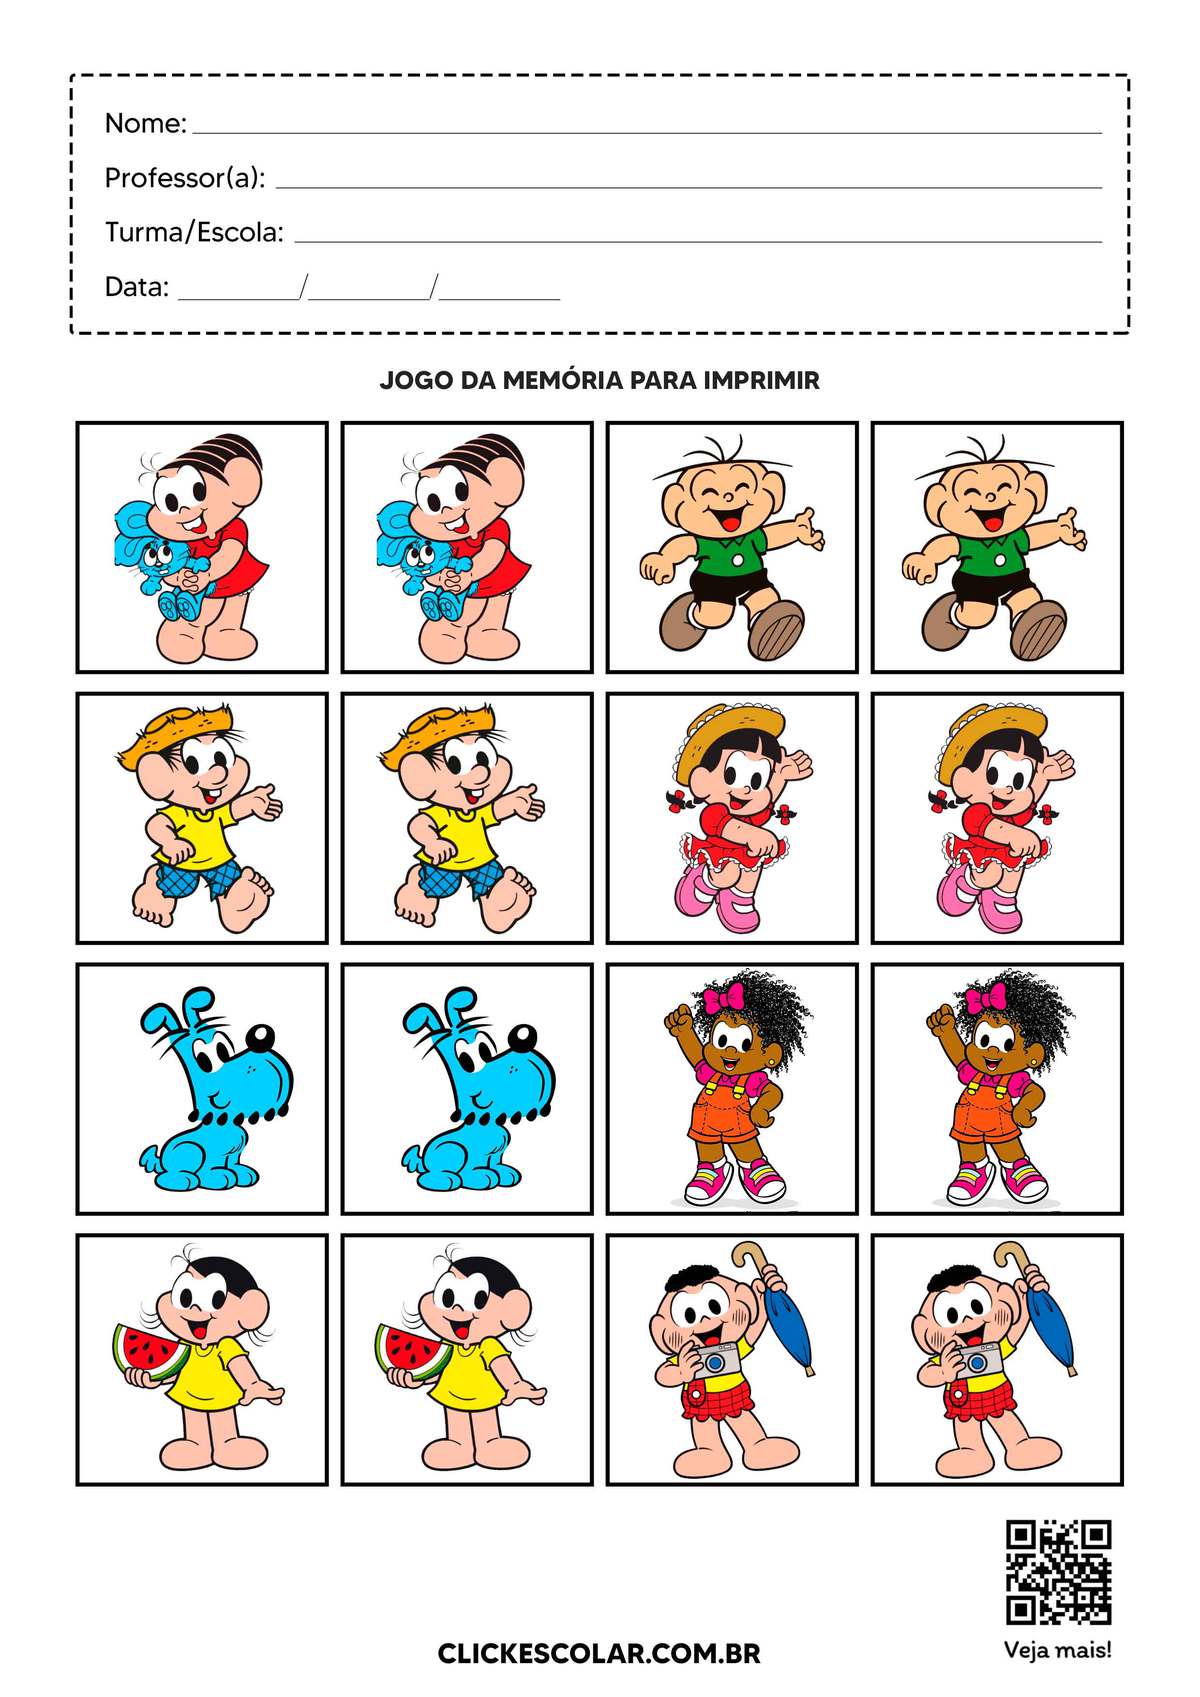 Jogo da Memória para Imprimir: 18 Modelos para Divertir as Crianças